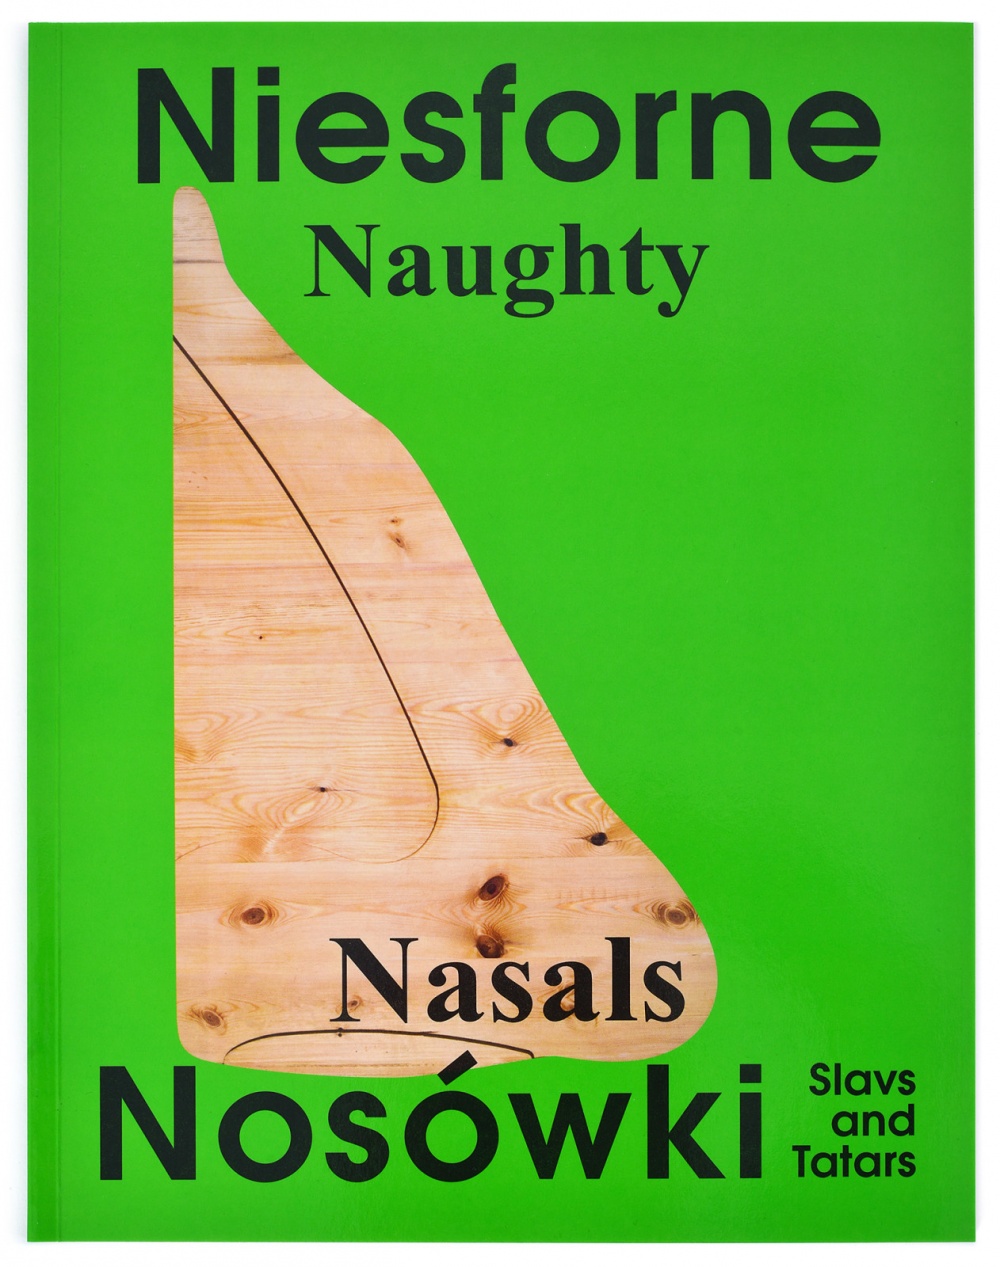 Naughty Nasals